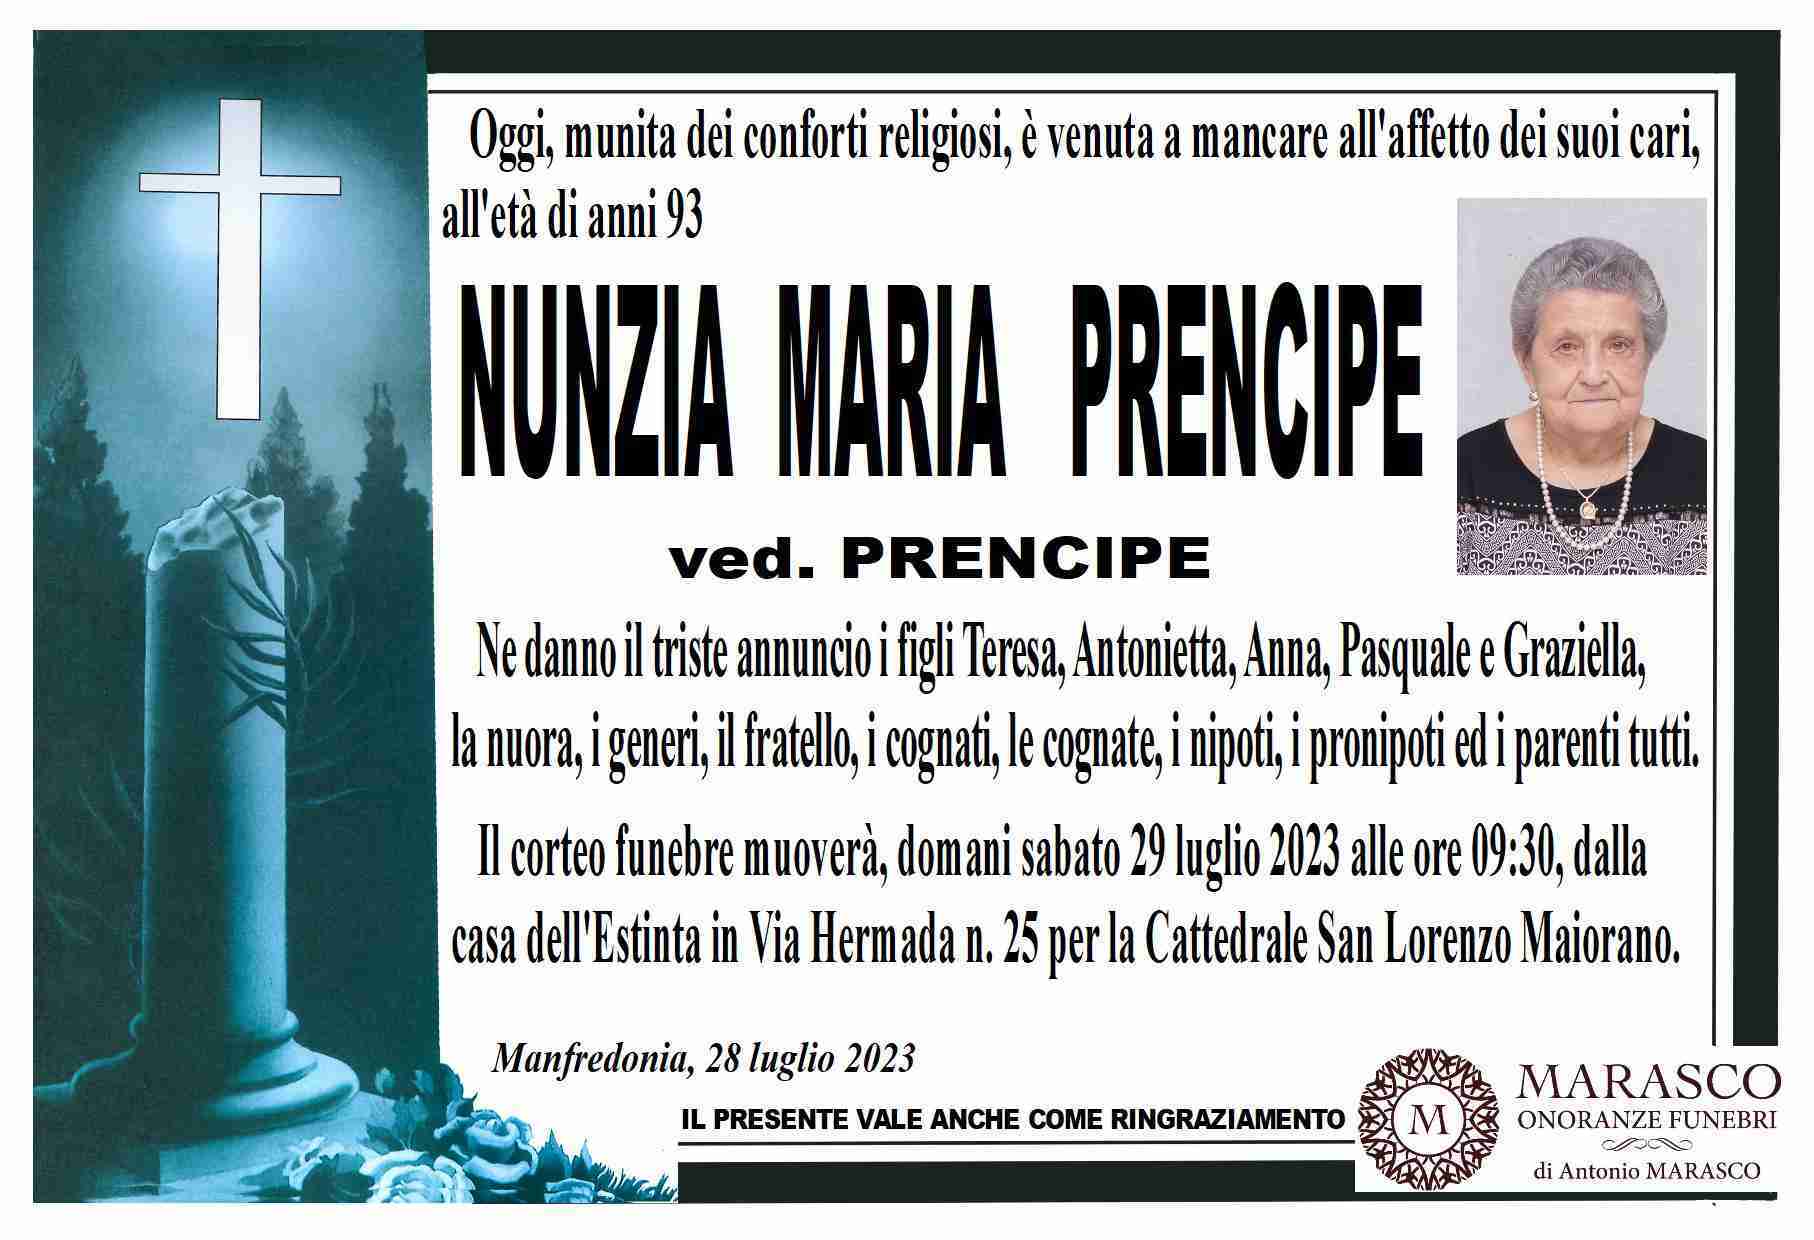 Nunzia Maria Prencipe